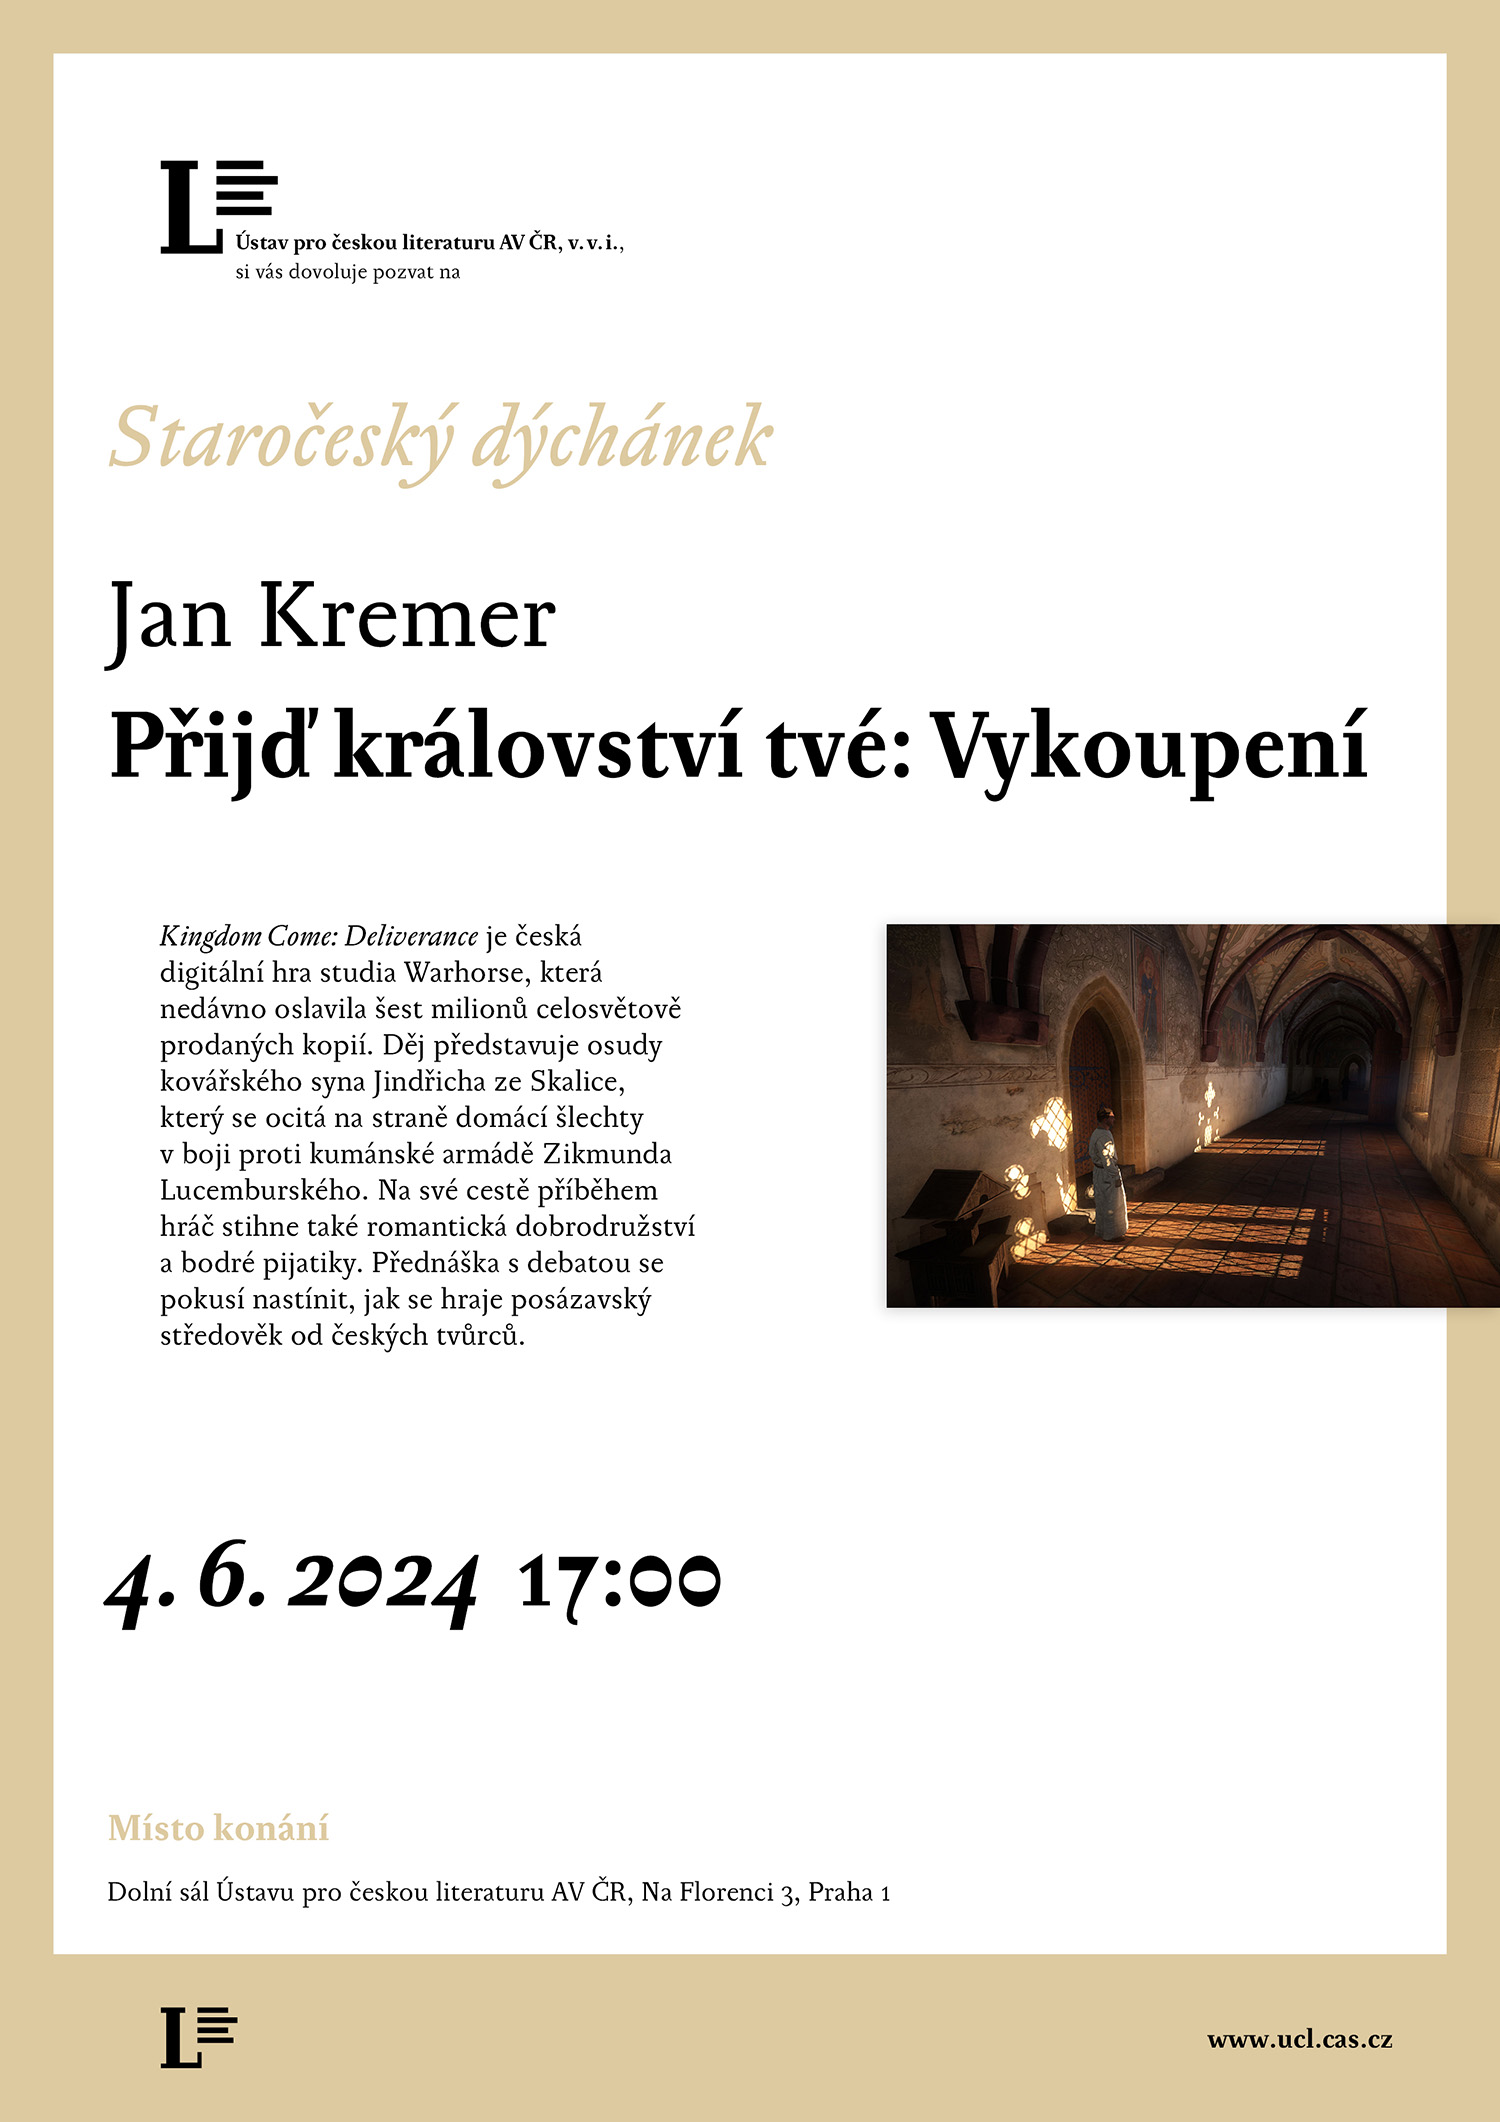 Jan Kremer – Přijď království tvé: Vykoupení (přednáška 4. 6. 2024)